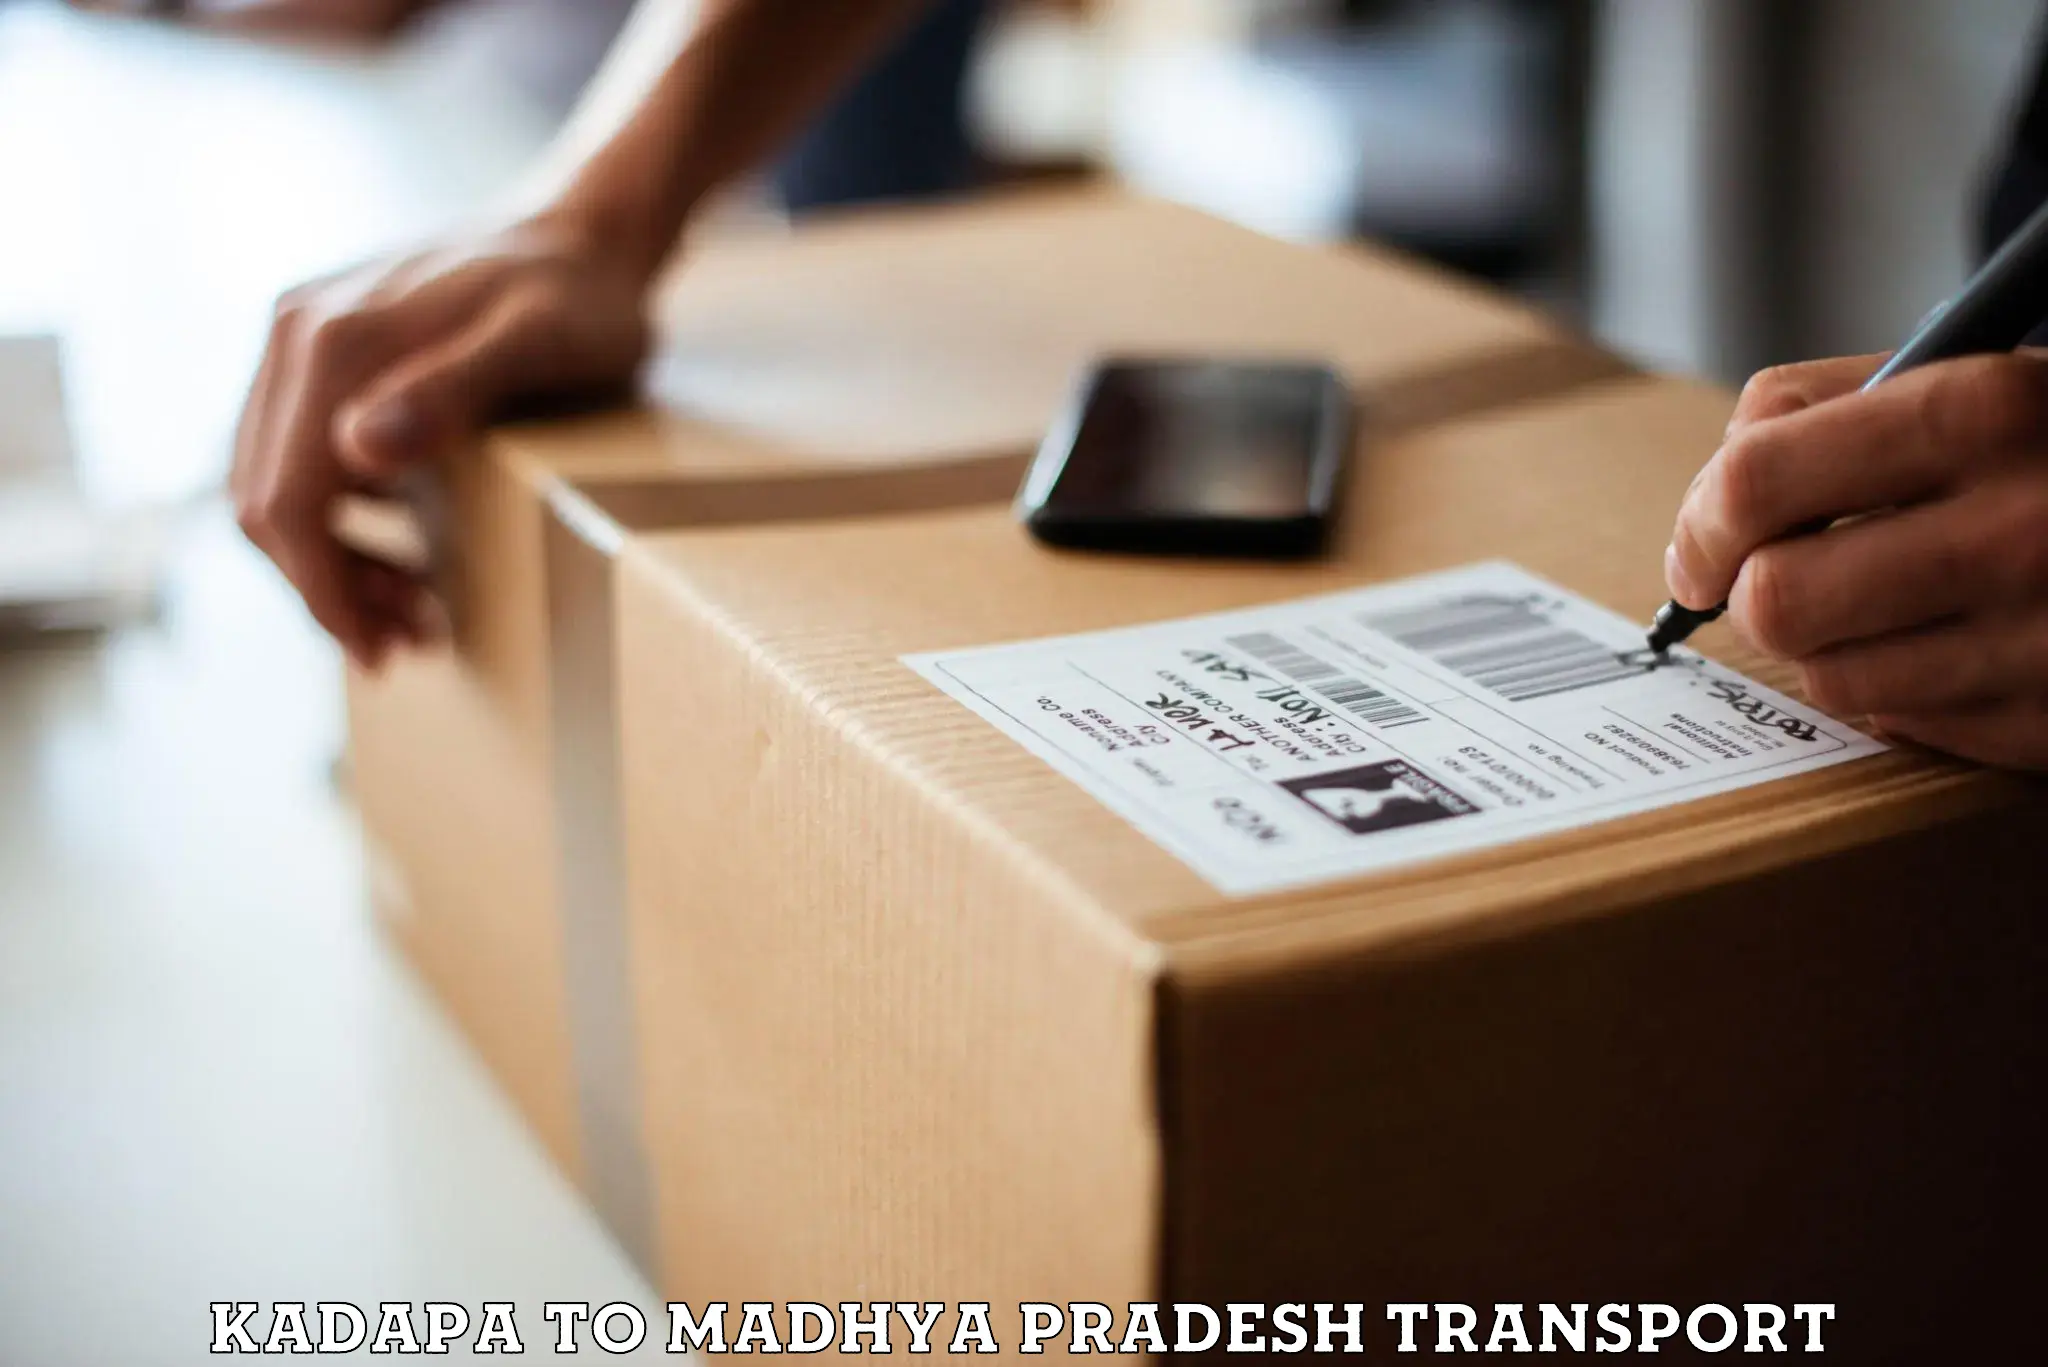 Goods delivery service Kadapa to Sohagi